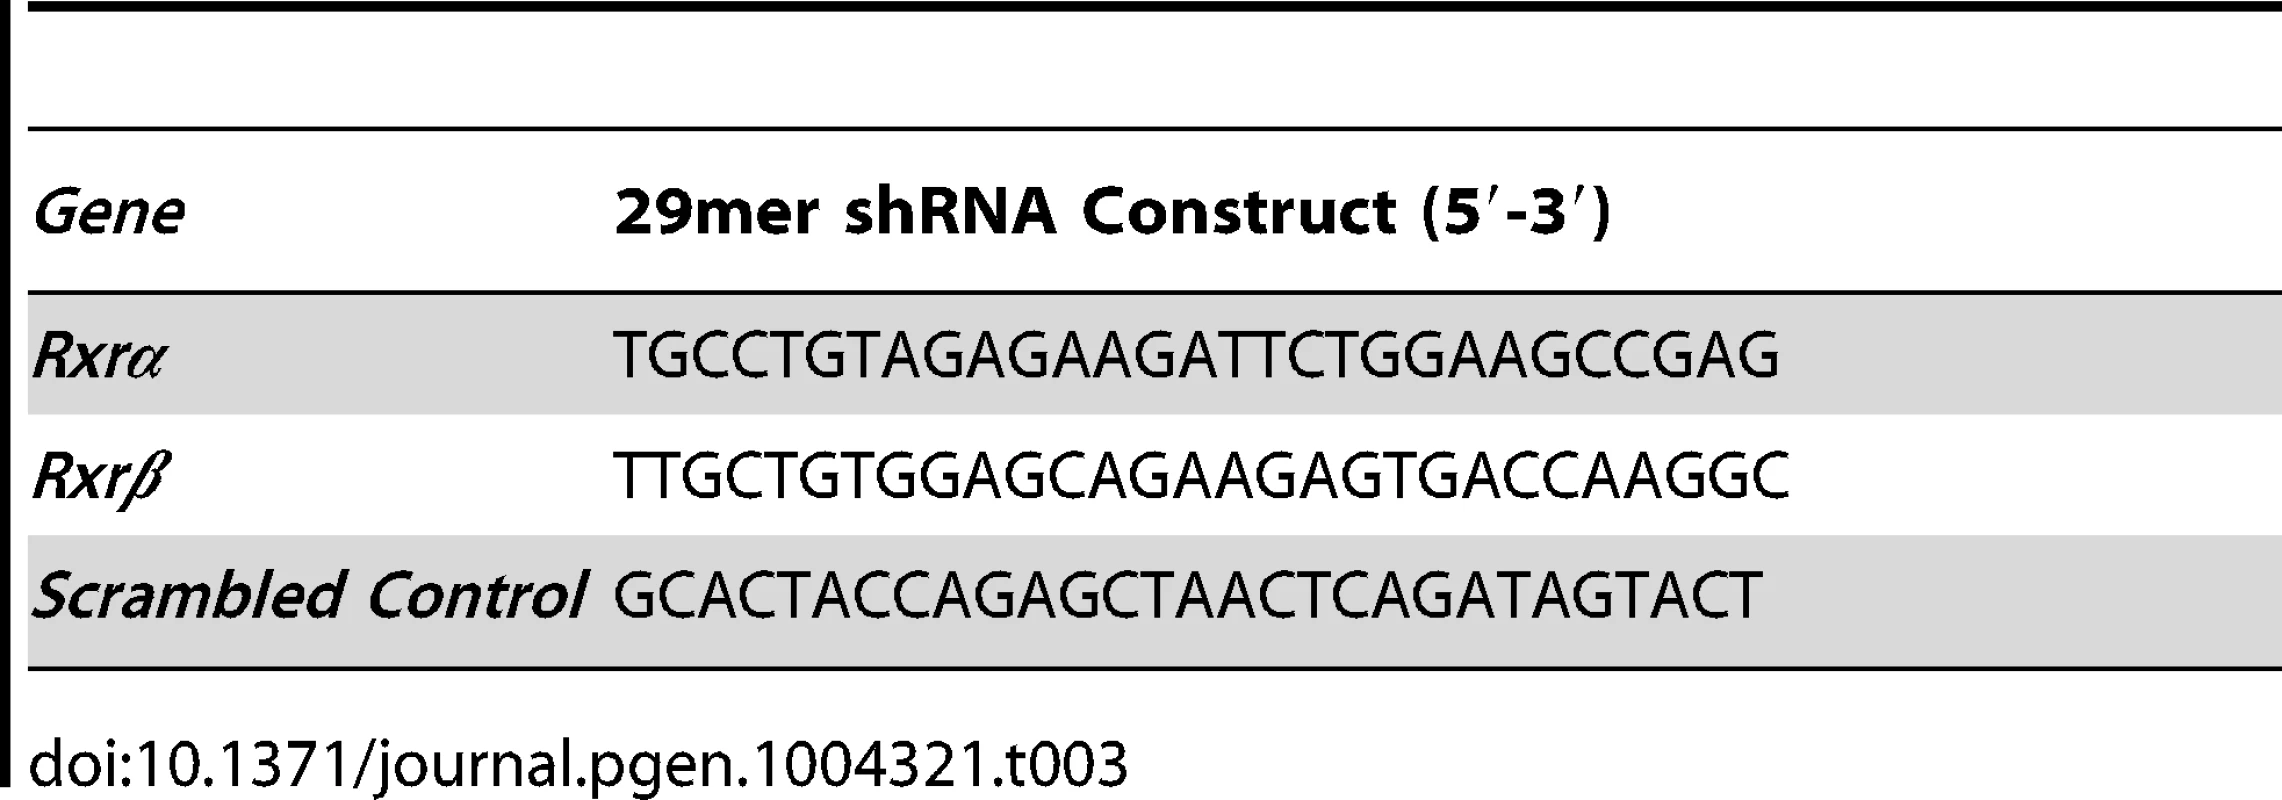 29mer shRNA constructs used for gene knockdown studies.